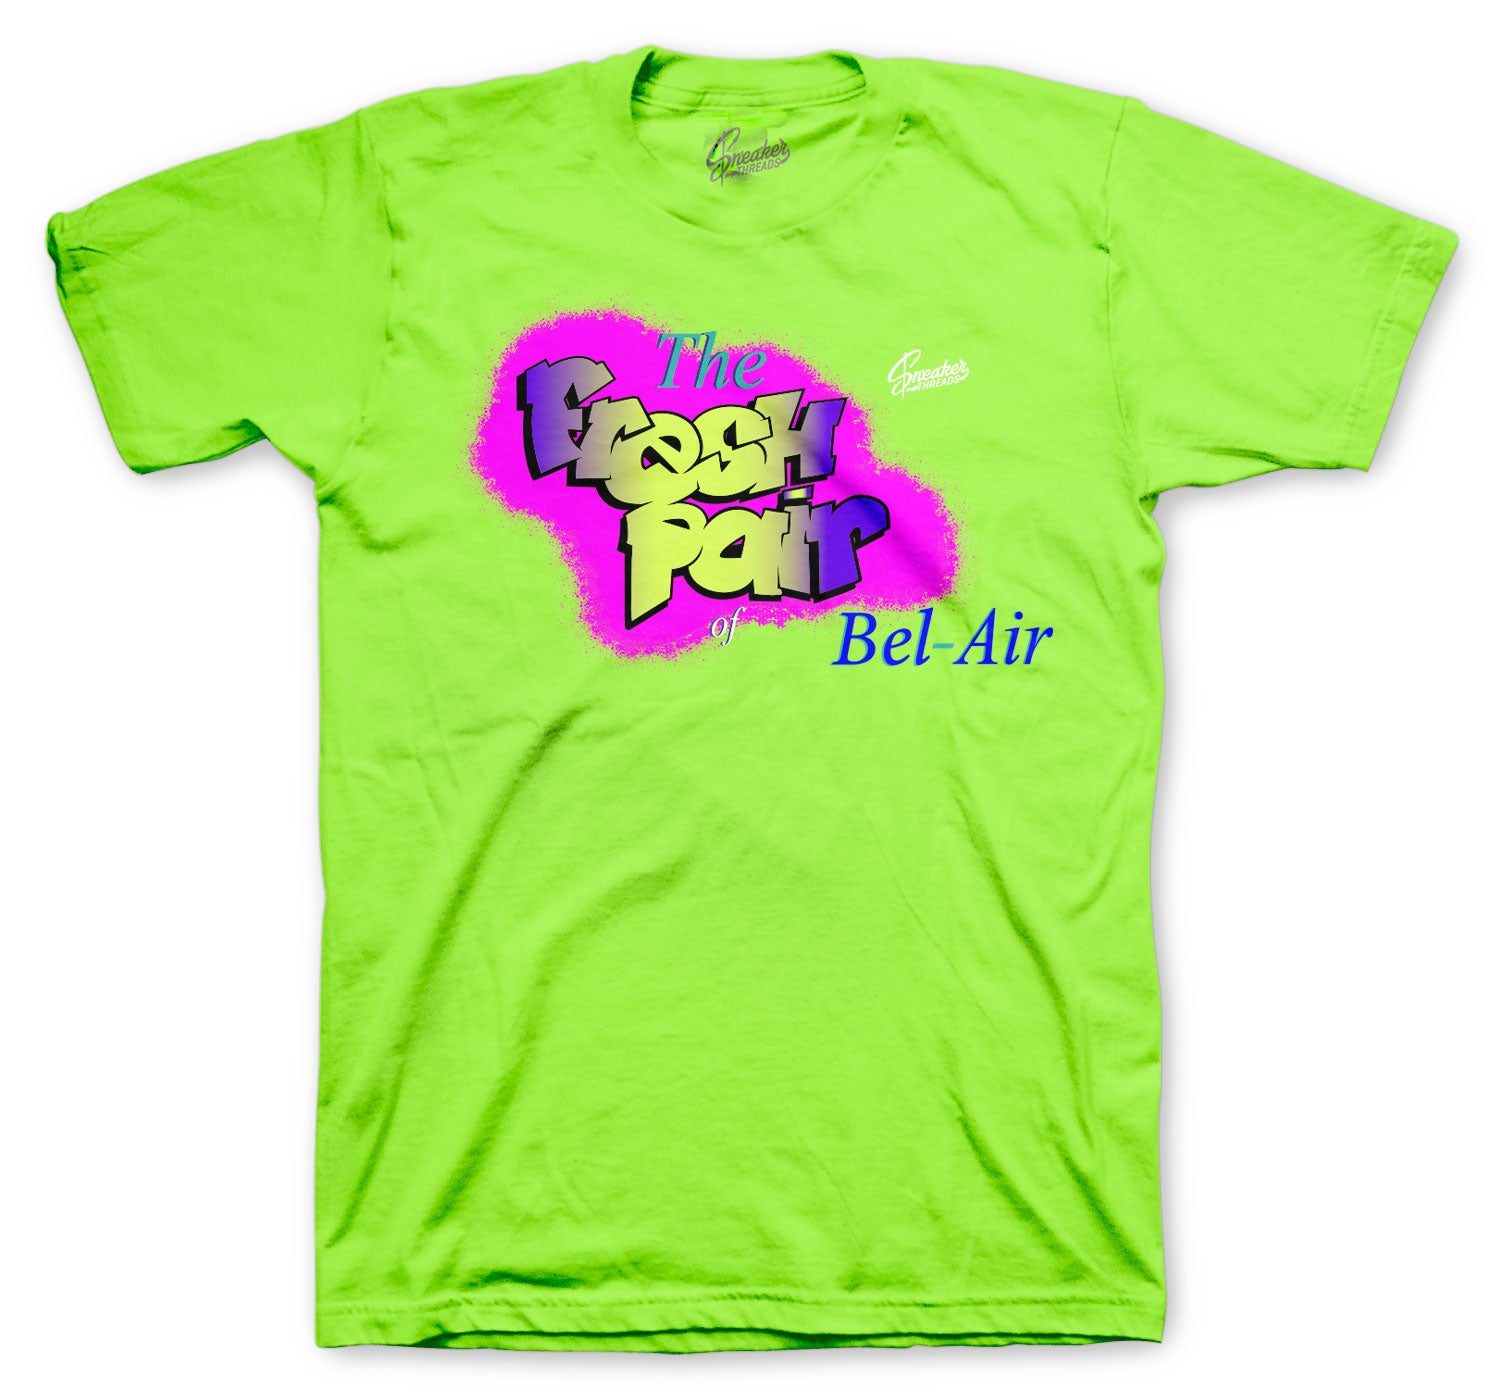 Retro 5 Alternate Bel Air Shirt - Fresh Air - Neon Green